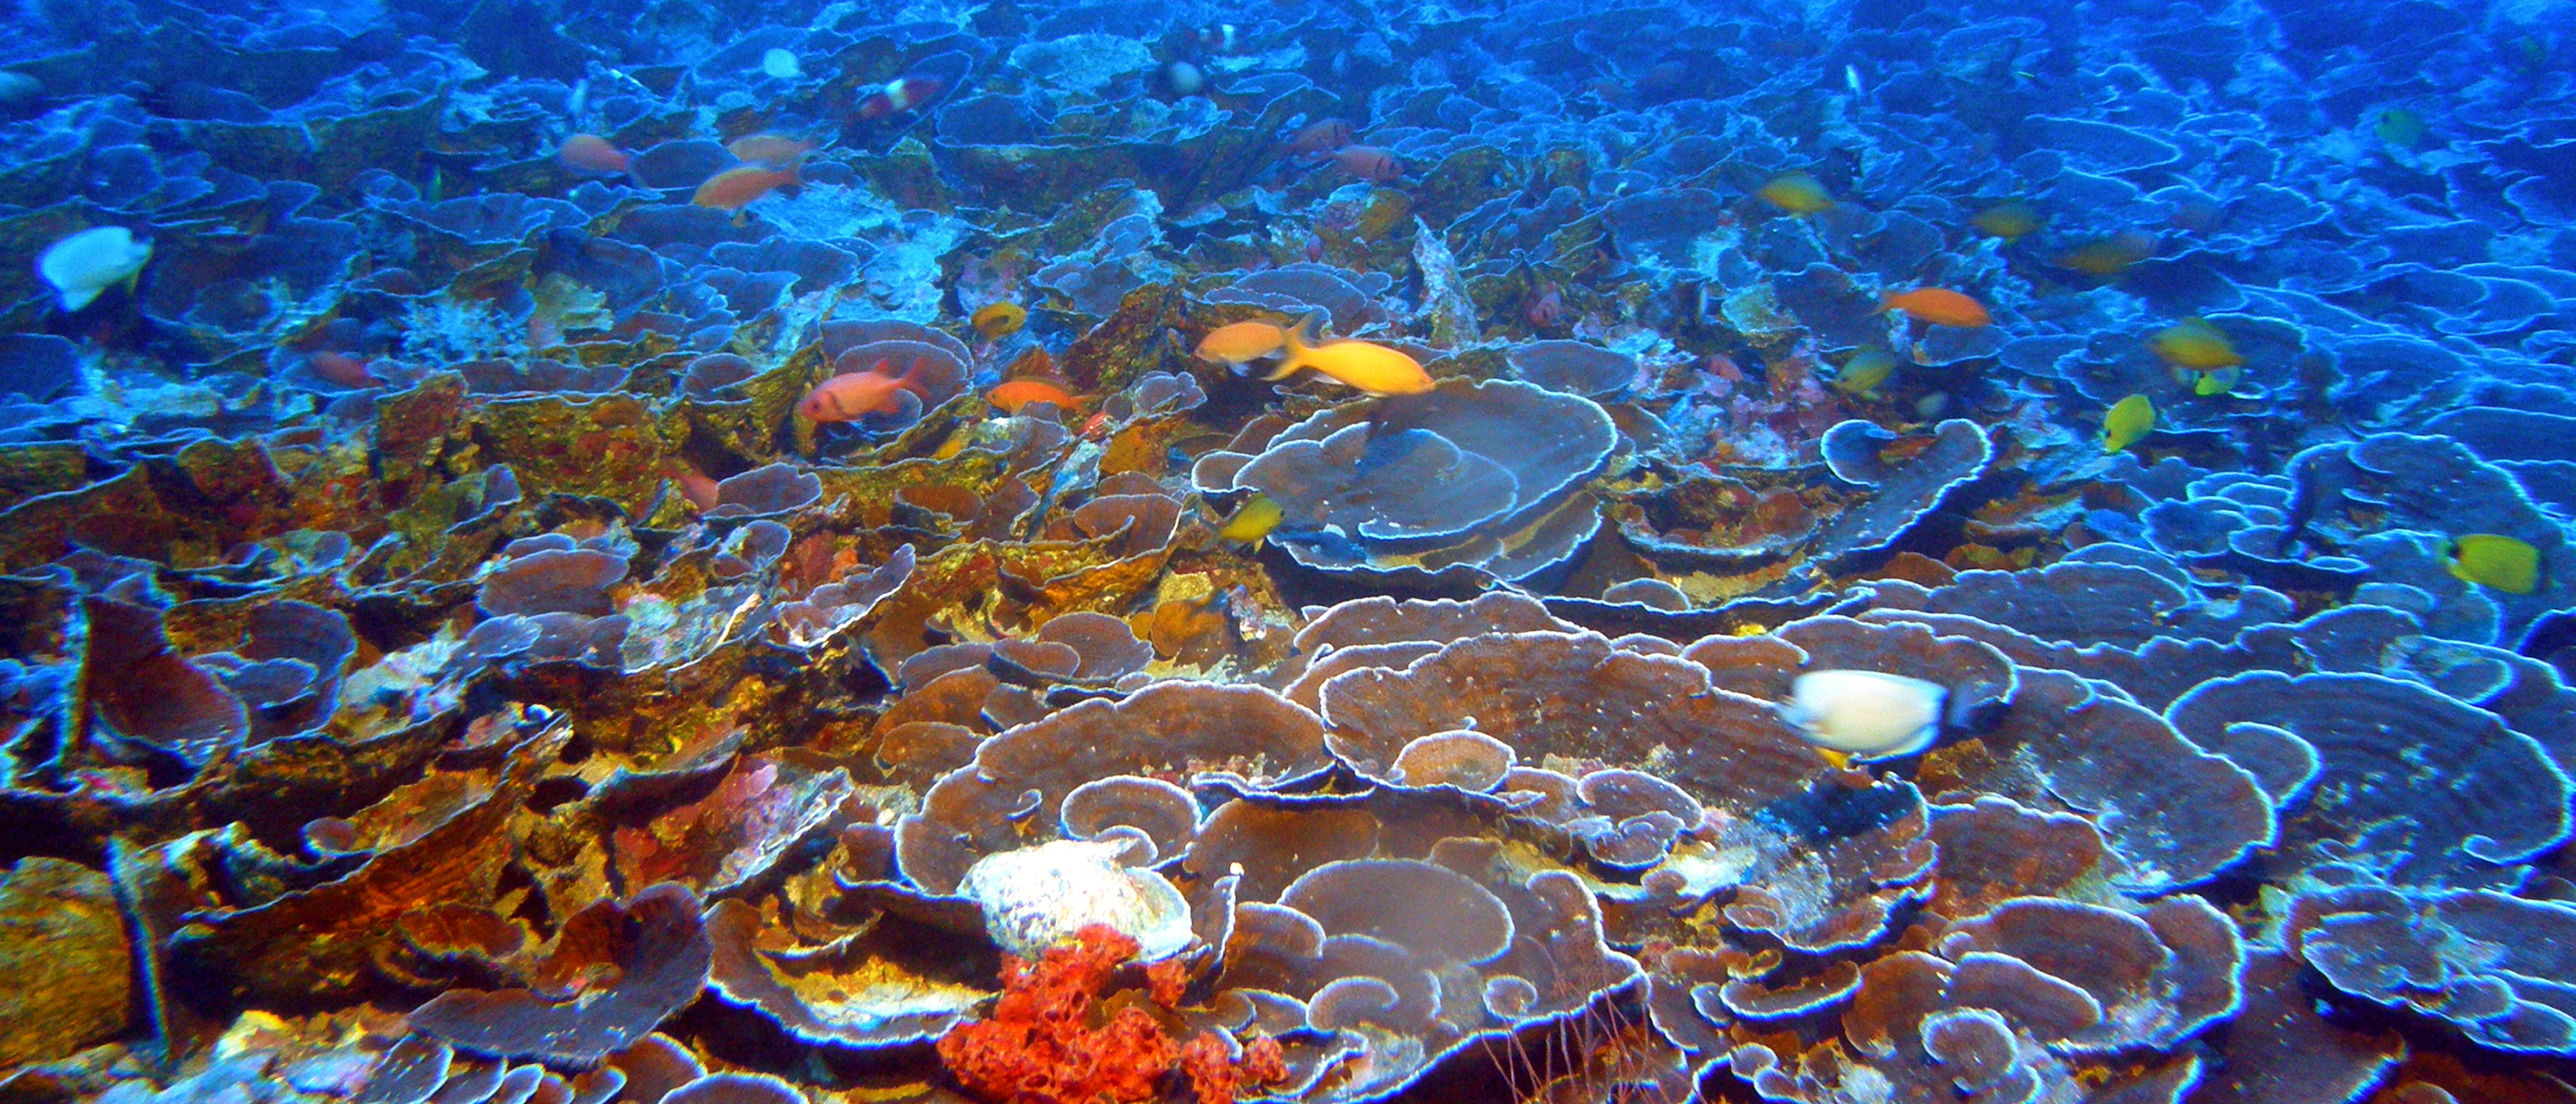 Extensive Hawaiian Reefs in Oceanic “Twilight Zone” Harbor Many Unique Species